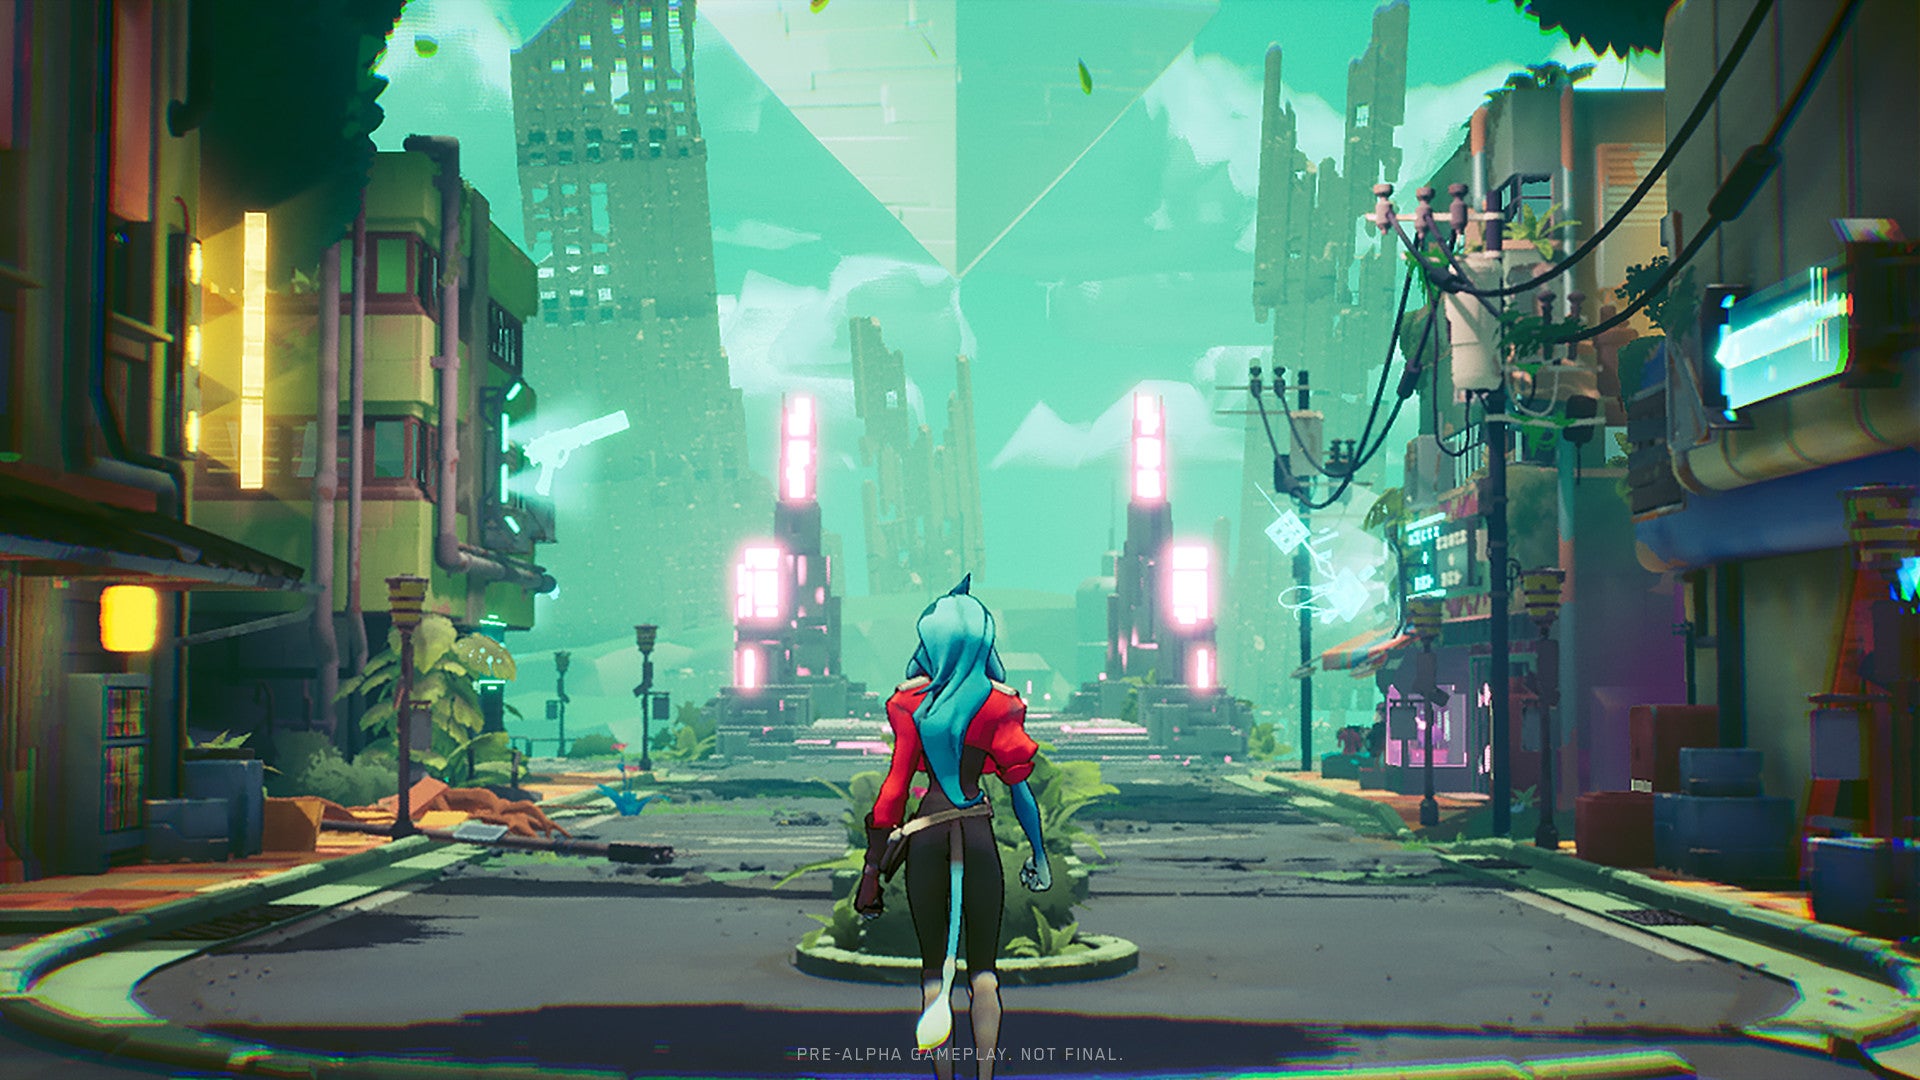 Standing before a futuristic city in a Hyper Light Breaker screenshot.